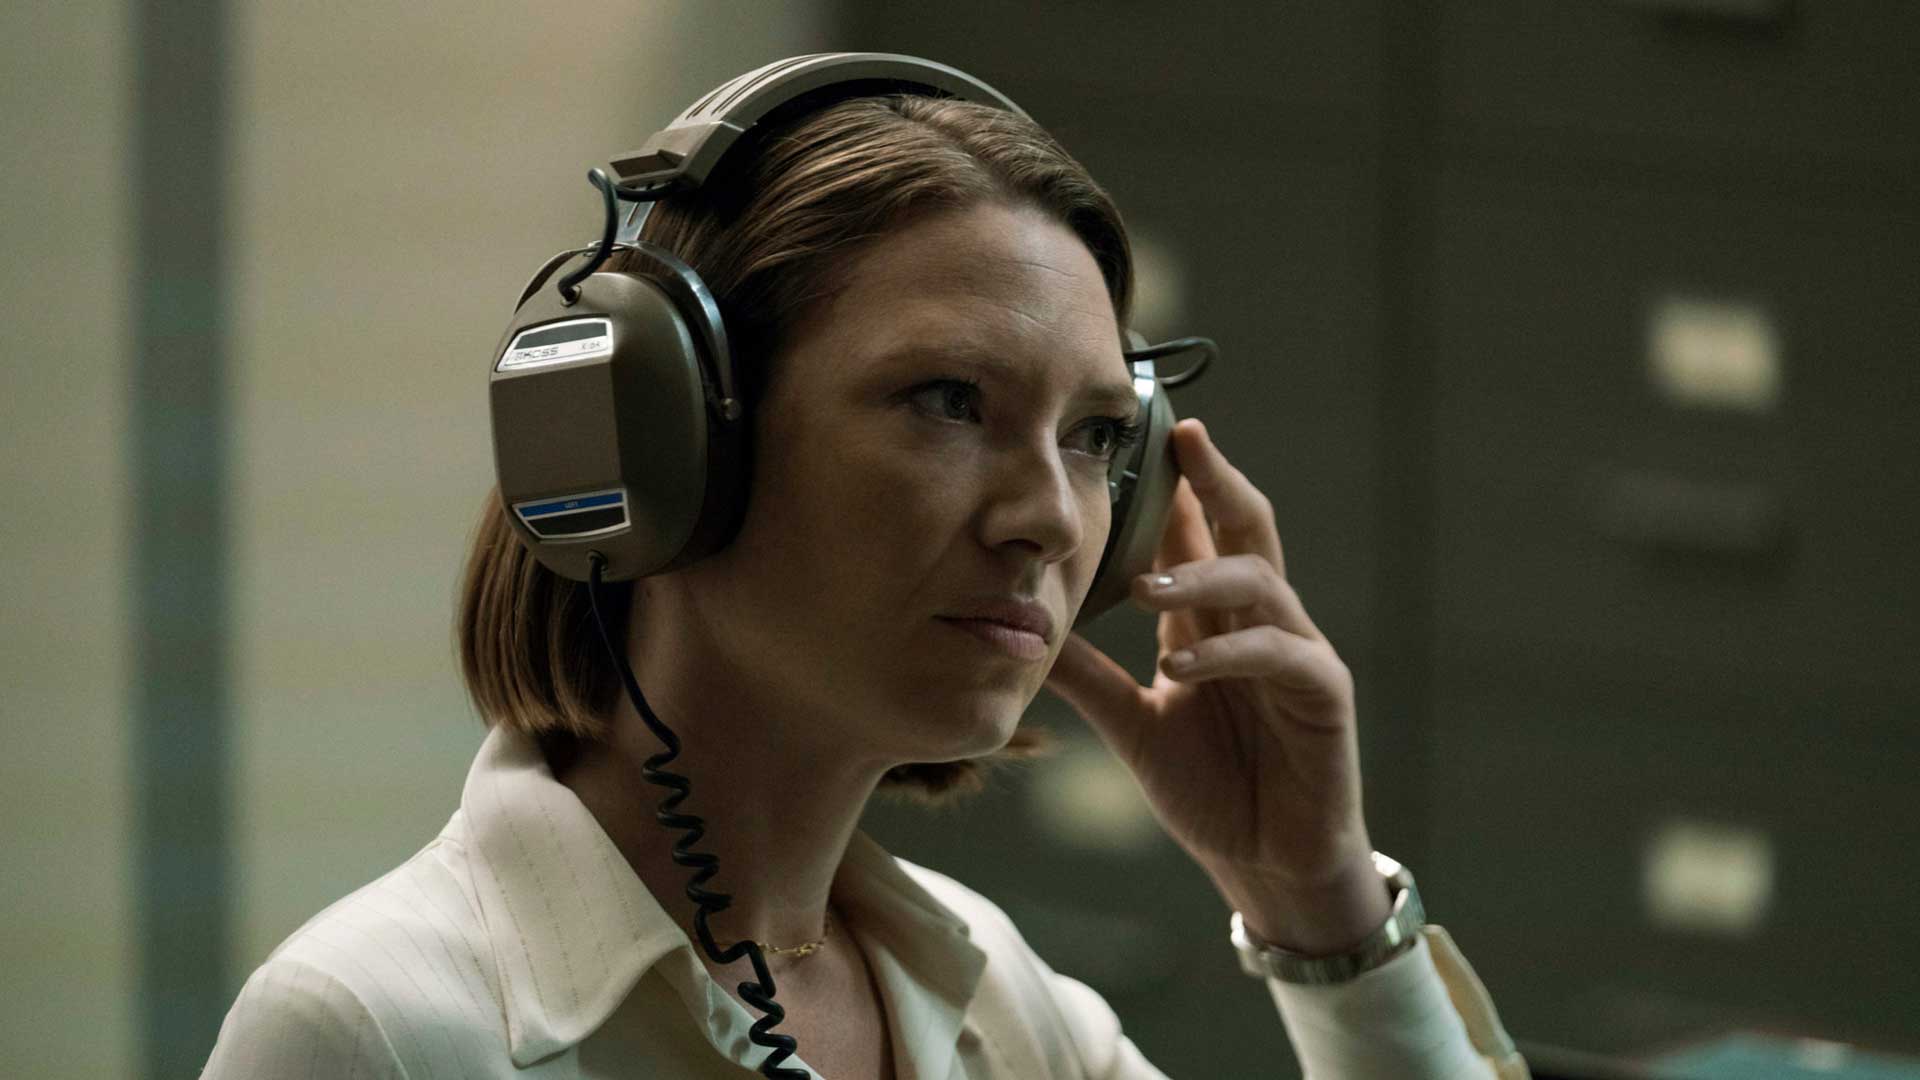 آنا تورو، بازیگر ۴۲ساله استرالیایی نقش تس سریال The Last of Us شبکه HBO مشغول کار با دستگاه روی گوش خود